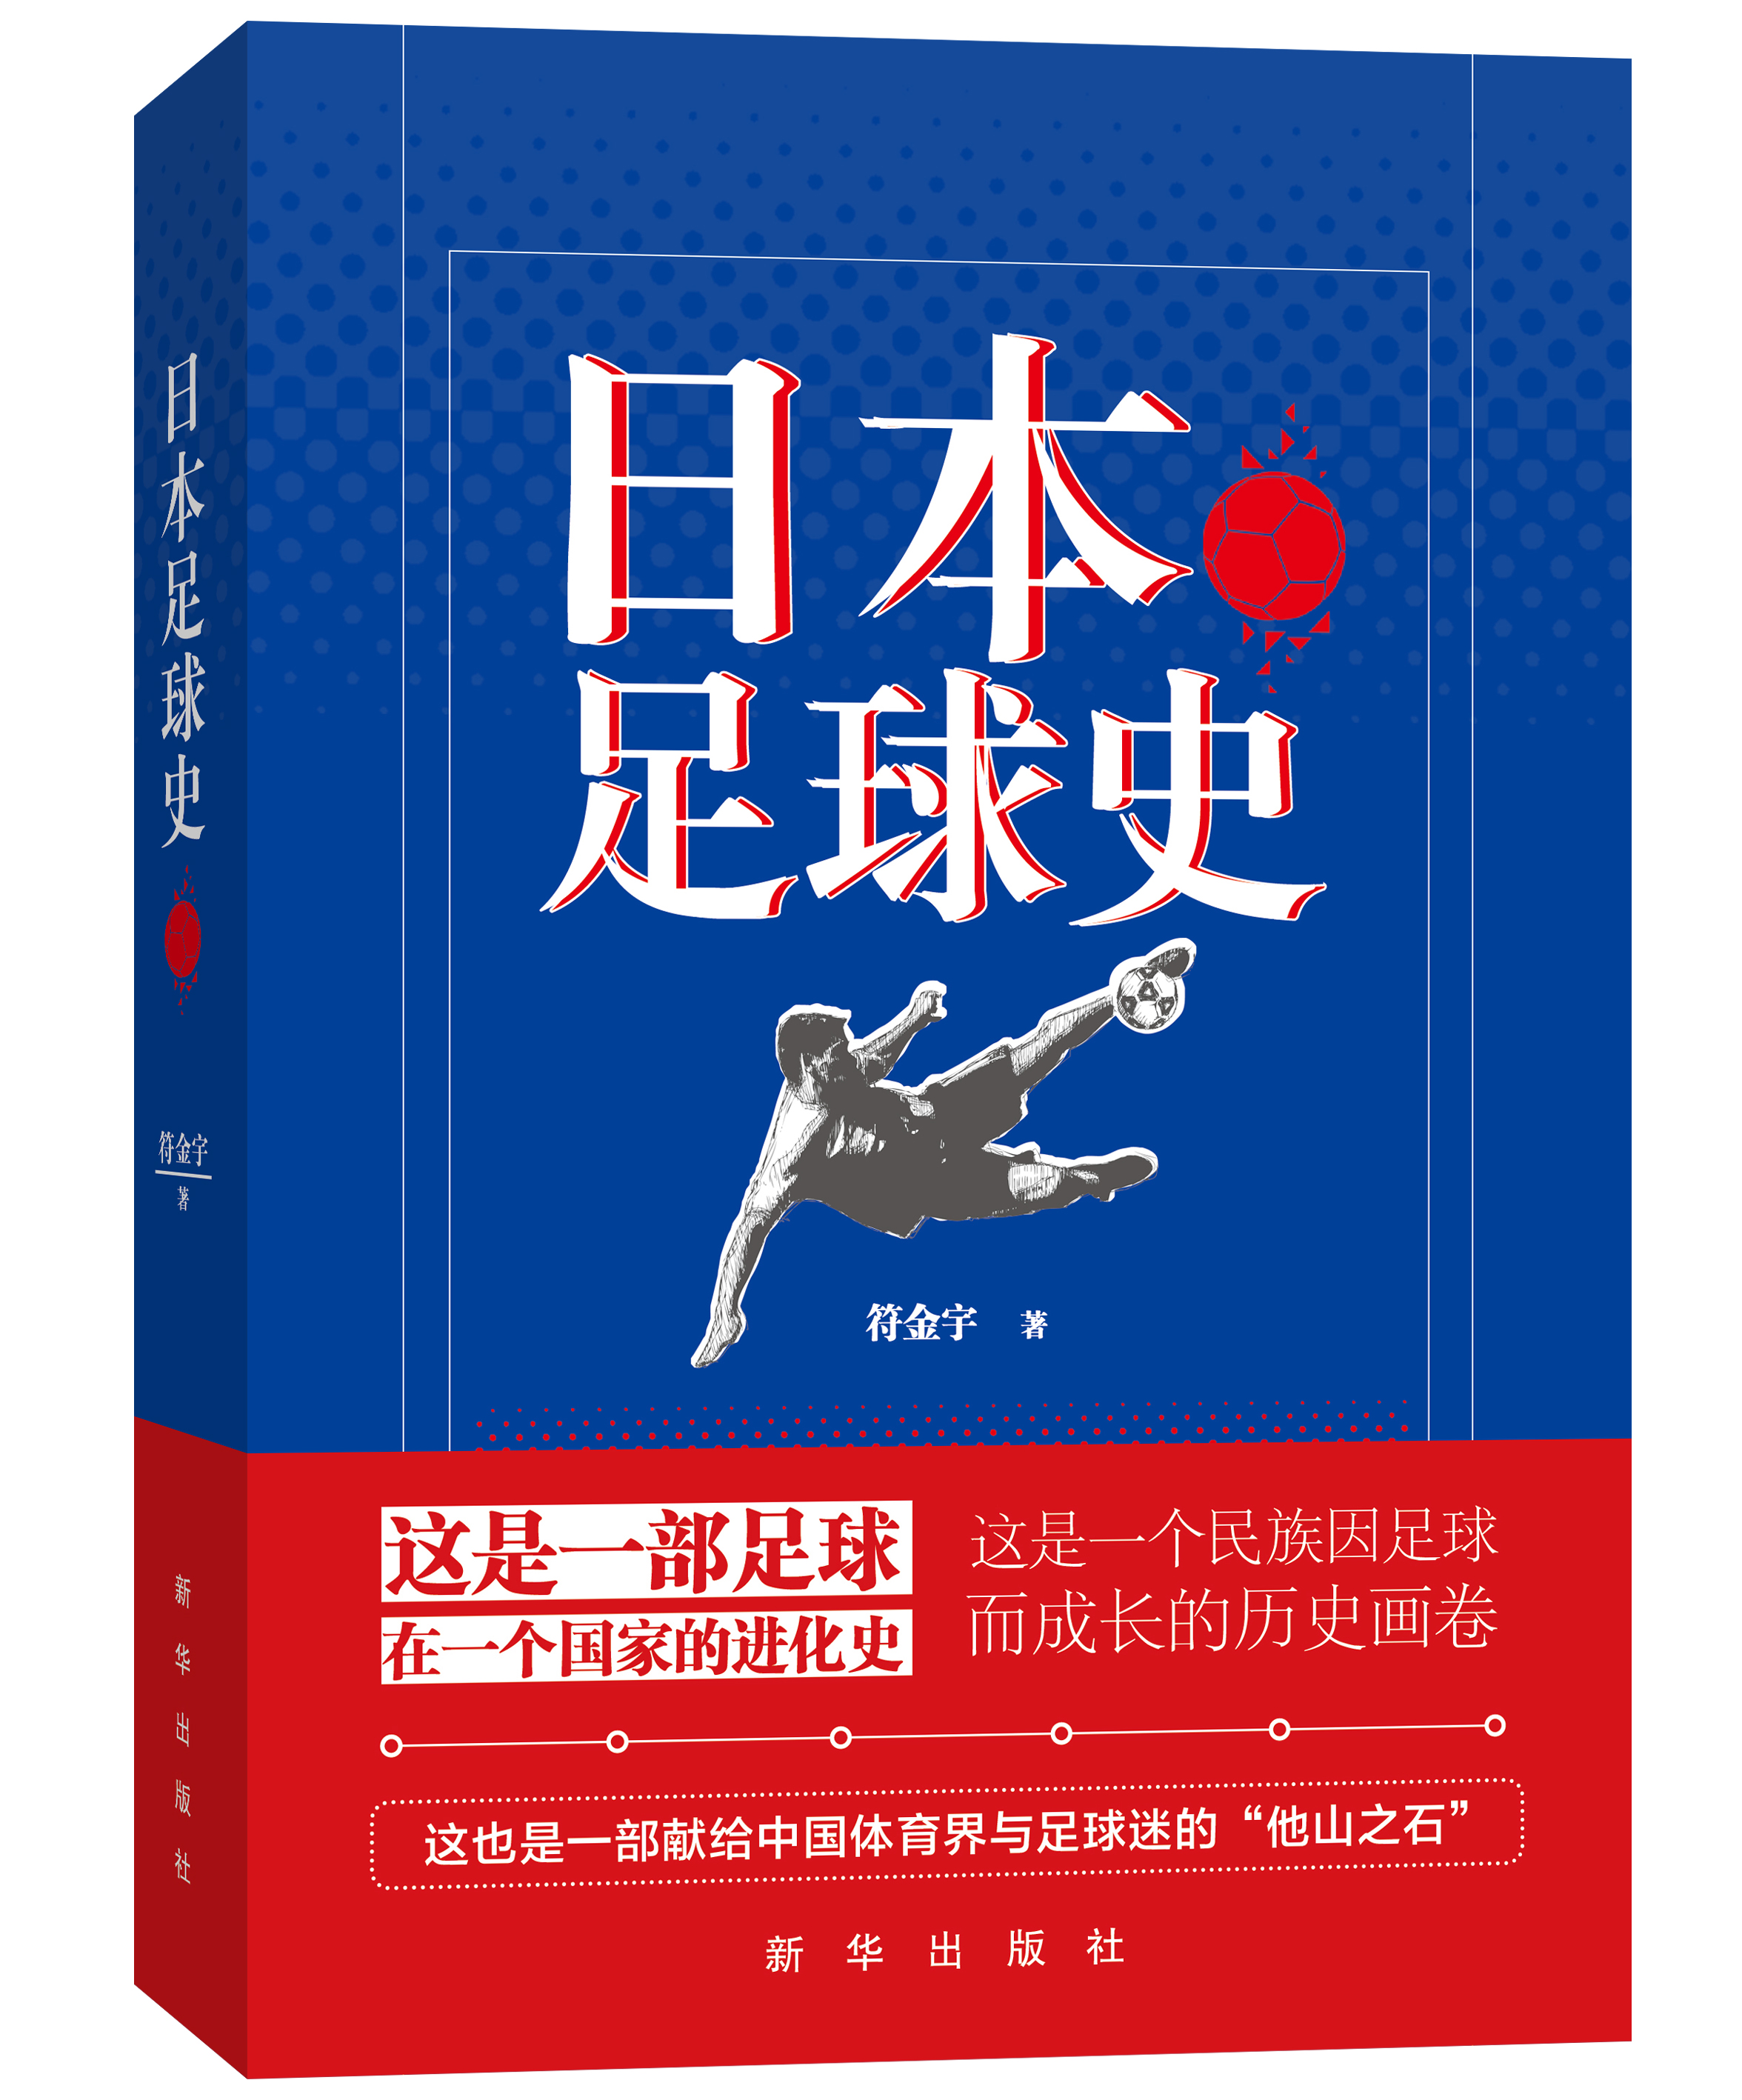 《日本足球史》新书分享会在京举行　讲述日本足球的故事